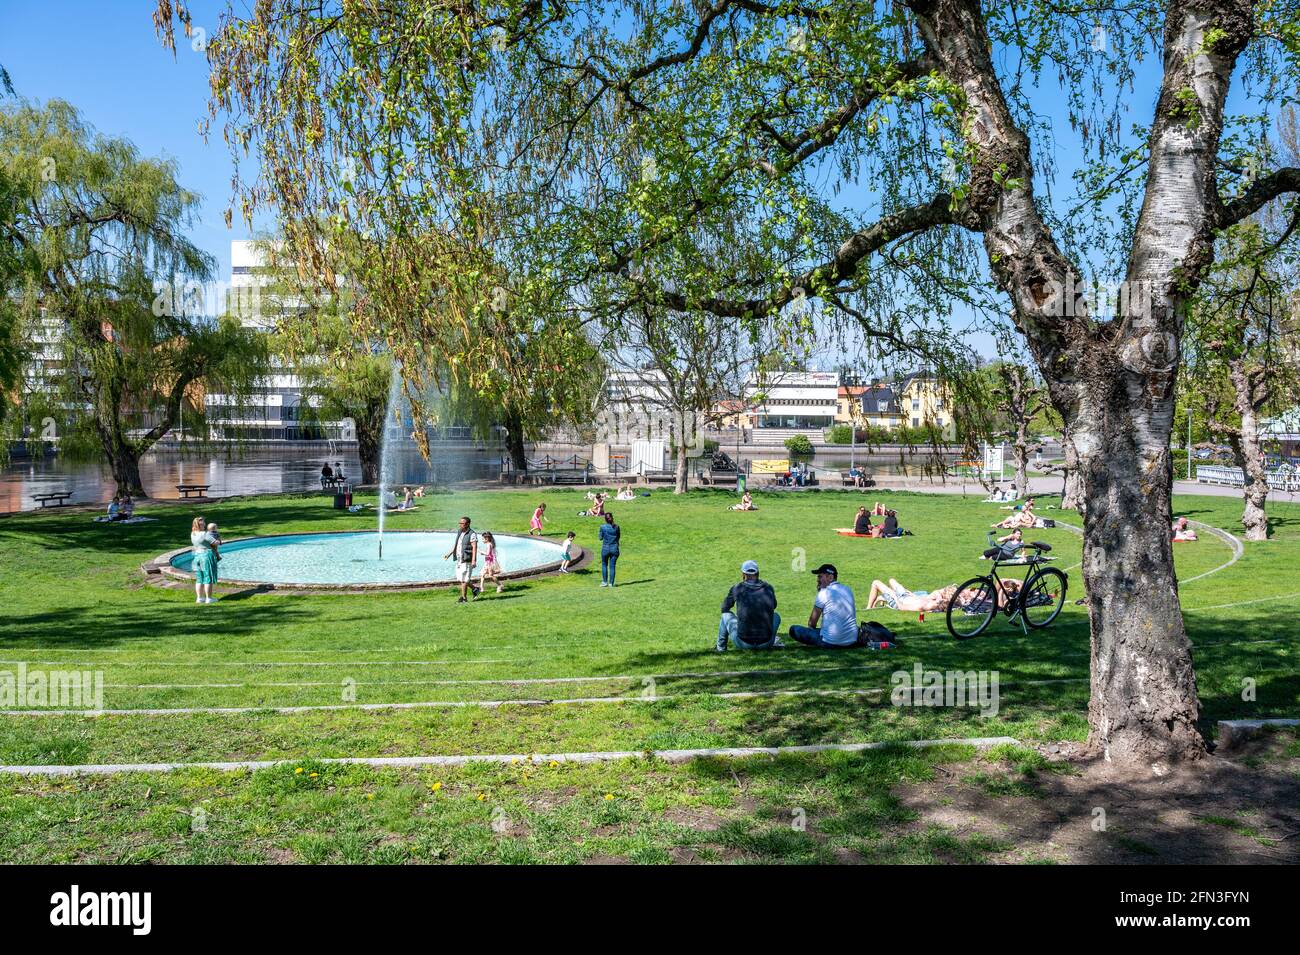 La gente gode di una soleggiata giornata primaverile nel parco cittadino di Strömparken, Norrköping in Svezia Foto Stock